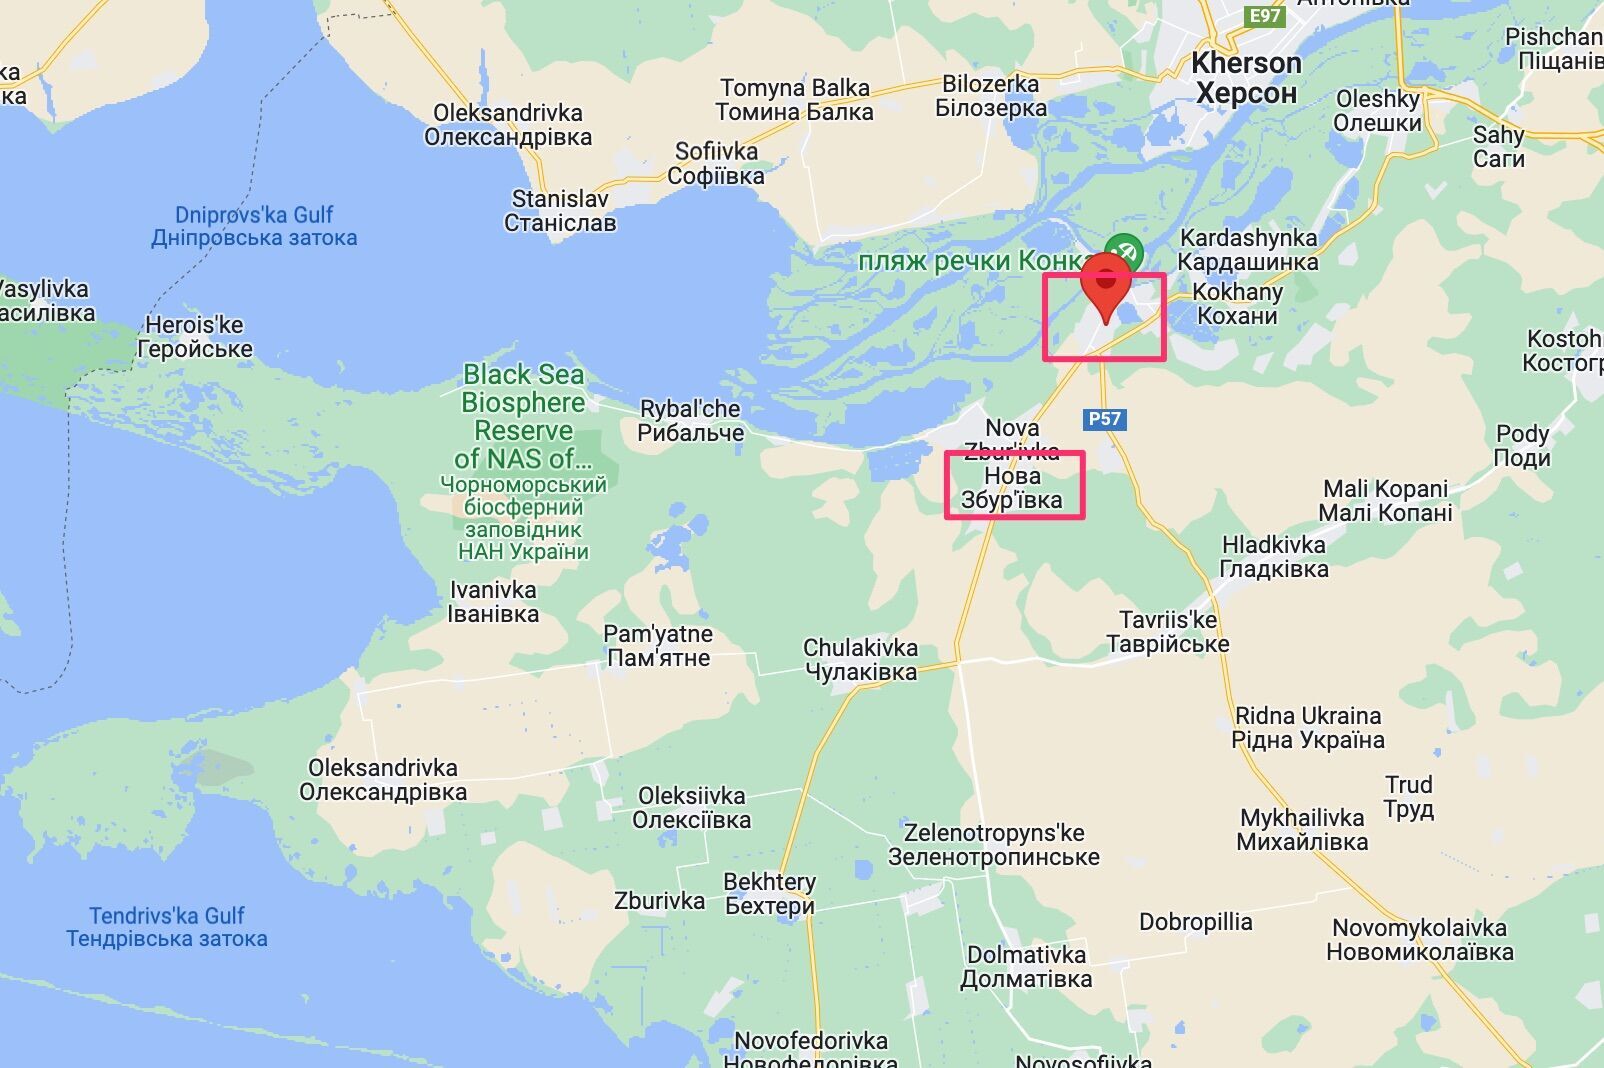 Голая Пристань и Новая Збурьевка – важные логистические узлы на западной половине левобережного плацдарма врага